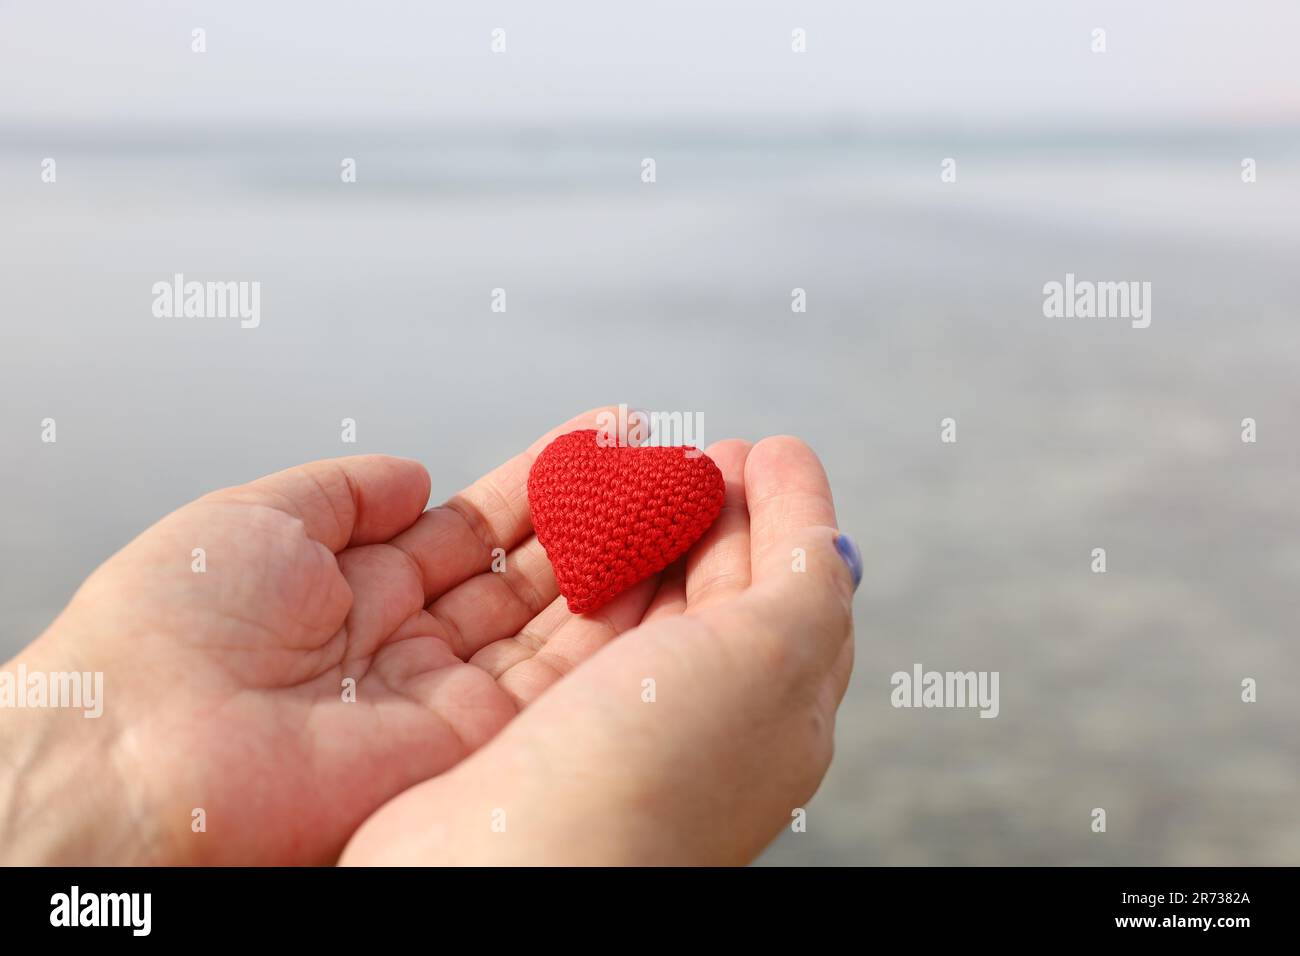 Seereise und Liebe am Sandstrand, rotes Strickherz in weiblichen Händen am Wasser. Valentinstag, Konzept einer romantischen Reise Stockfoto